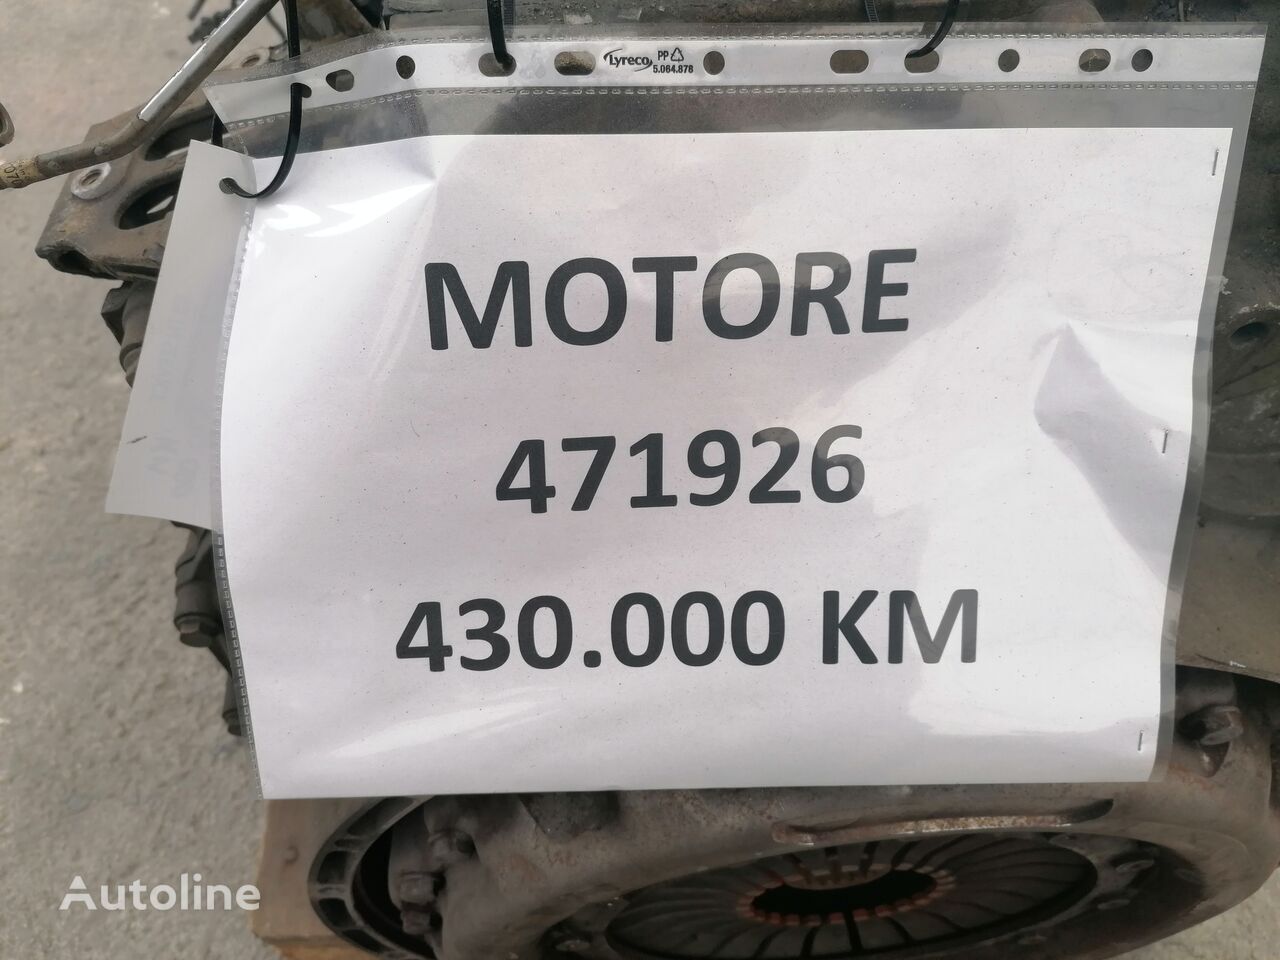 Motore per Camion Mercedes-Benz 471926 KM 430.000: foto 7